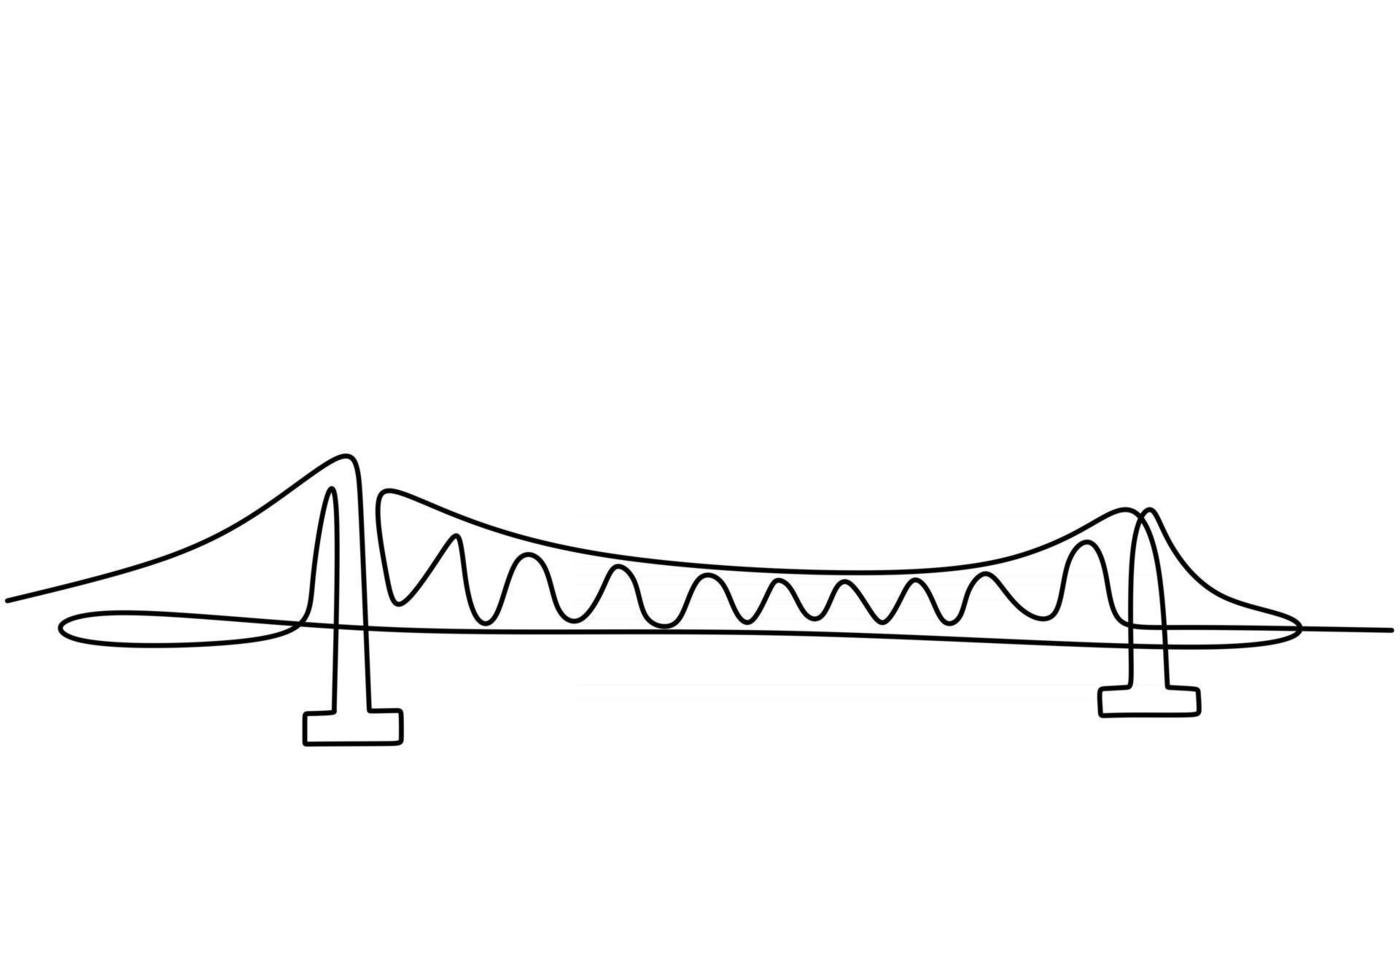 puente gigante sobre el río. una línea continua de diseño de dibujo de puente. estilo minimalista moderno simple aislado sobre fondo blanco. vector